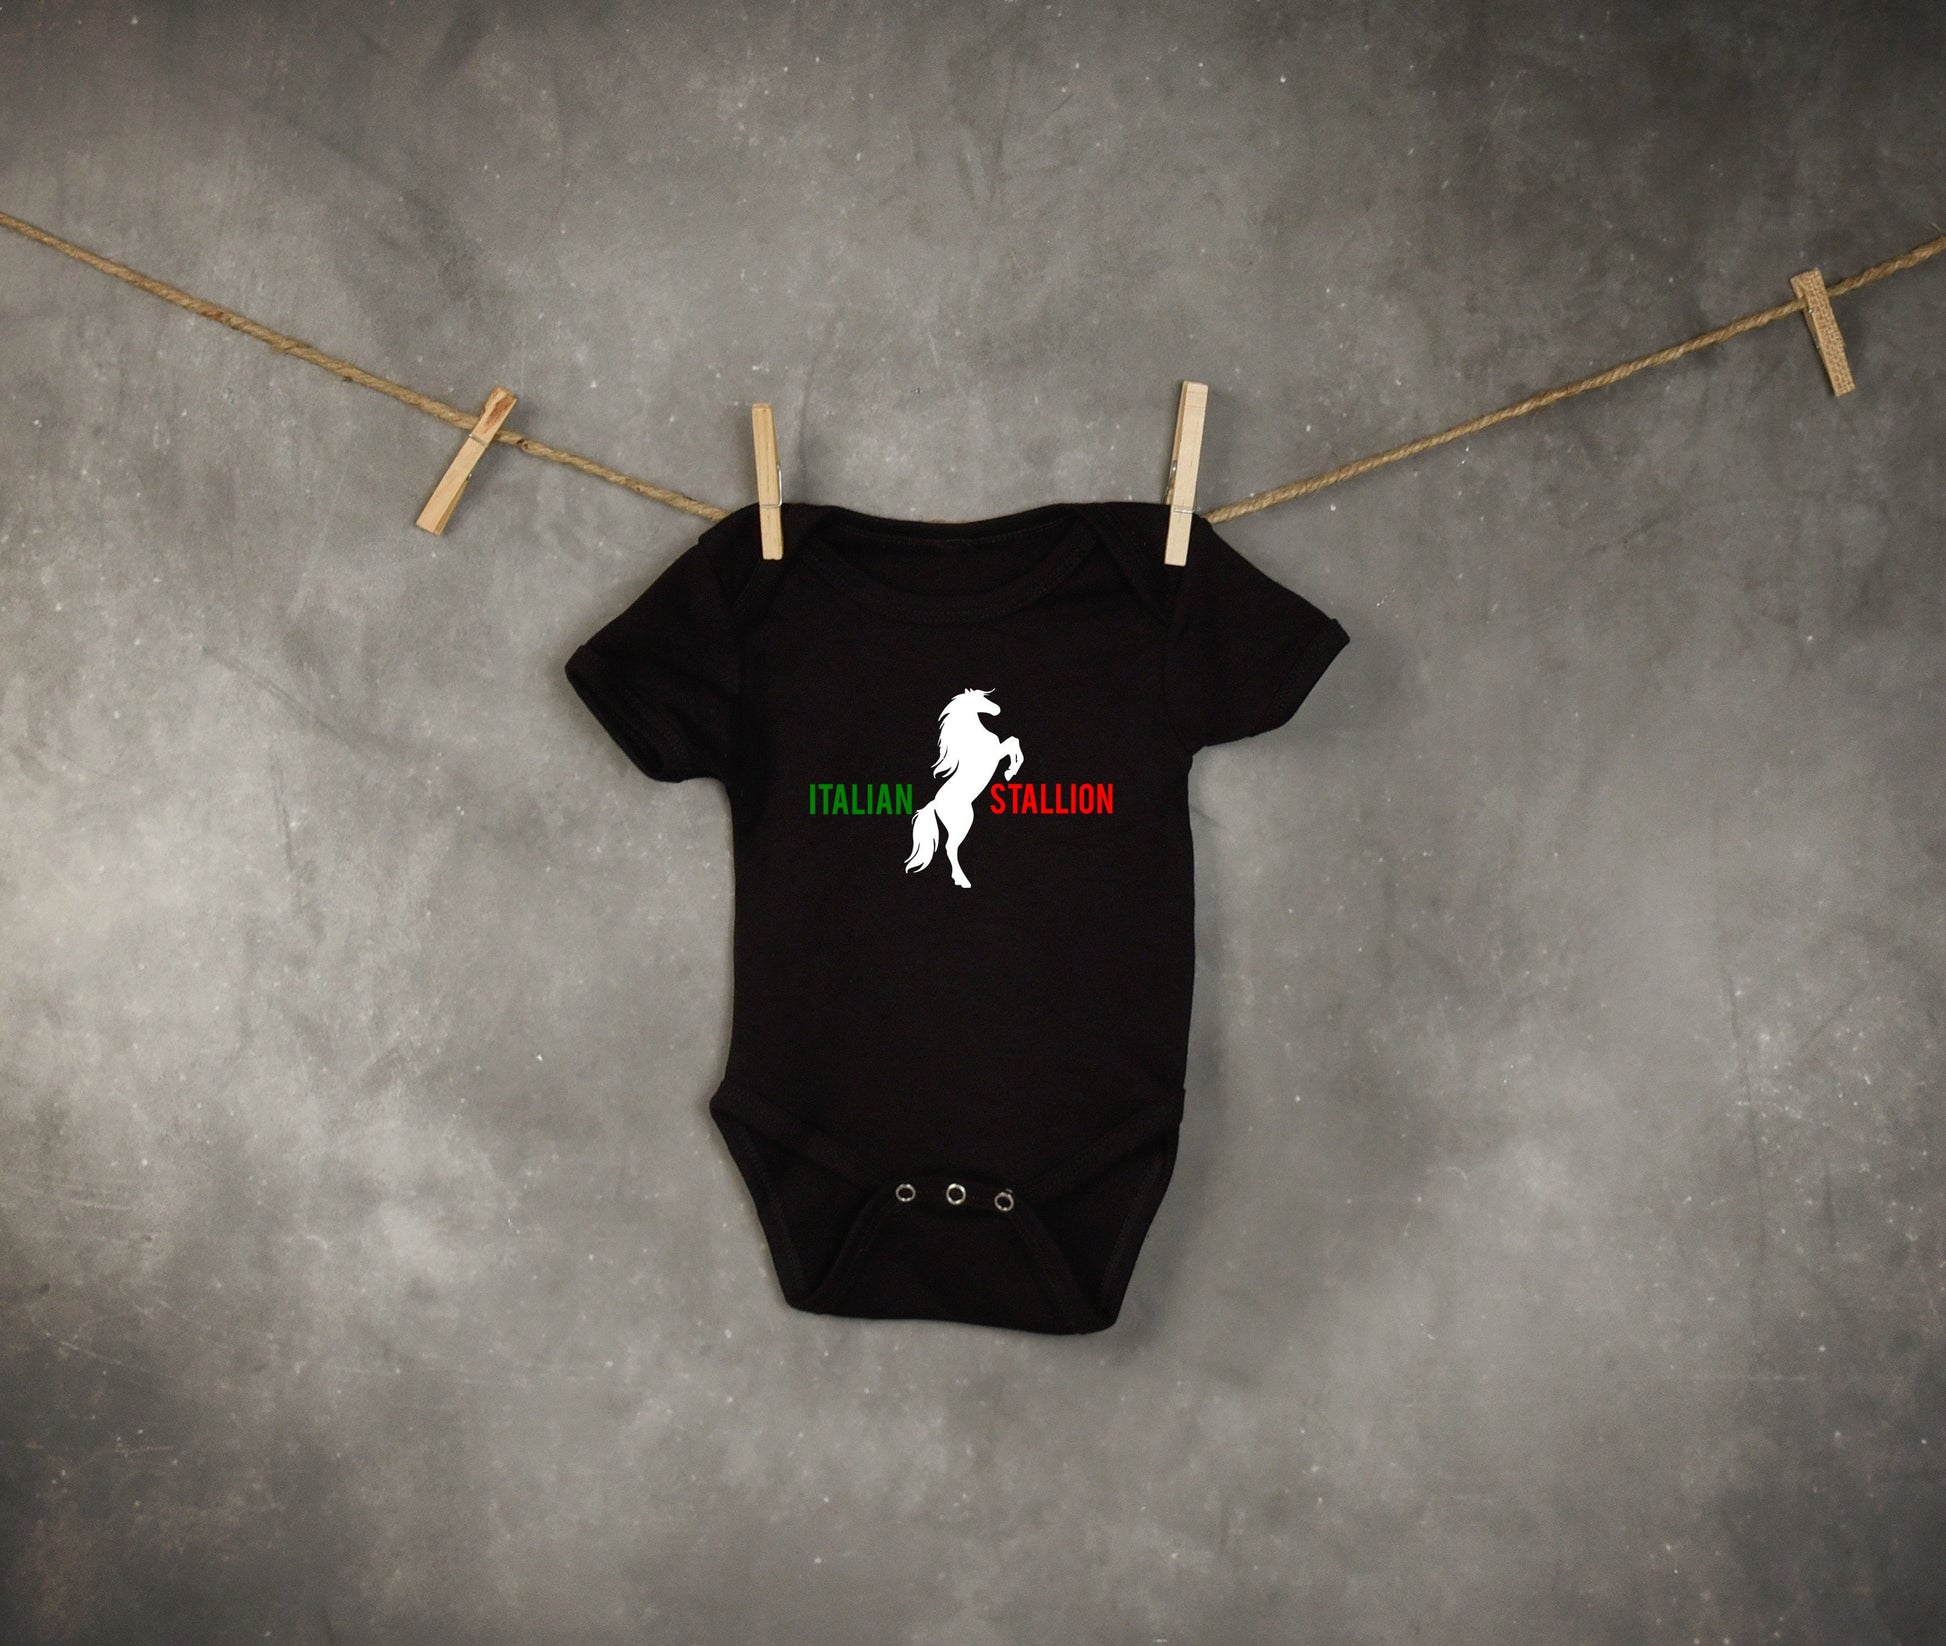 Italian Stallion Infant or Toddler Shirt or Bodysuit - Cute Toddler Shirt - Italian Shirt - Italian Heritage - Toddler Boy Shirt - Preschool